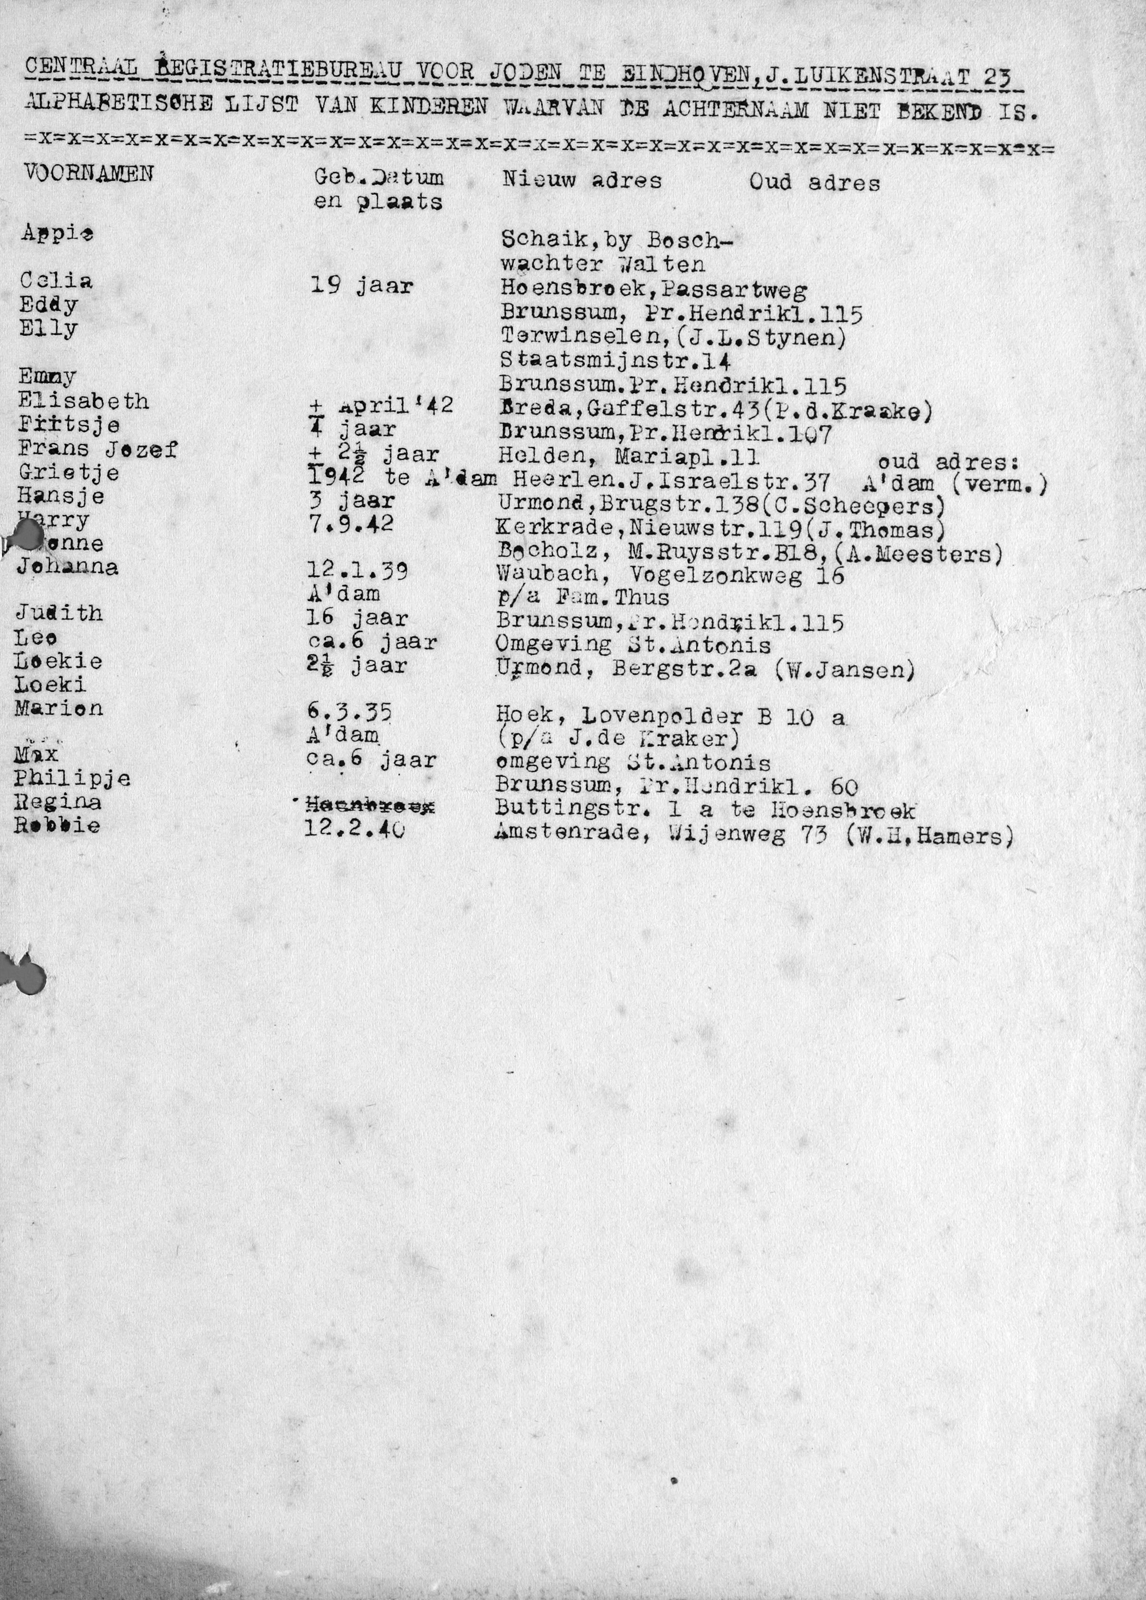 Namenlijst, uitgegeven door het CRBJ, met de namen van 20 kinderen waarvan achternaam onbekend is, 1945 